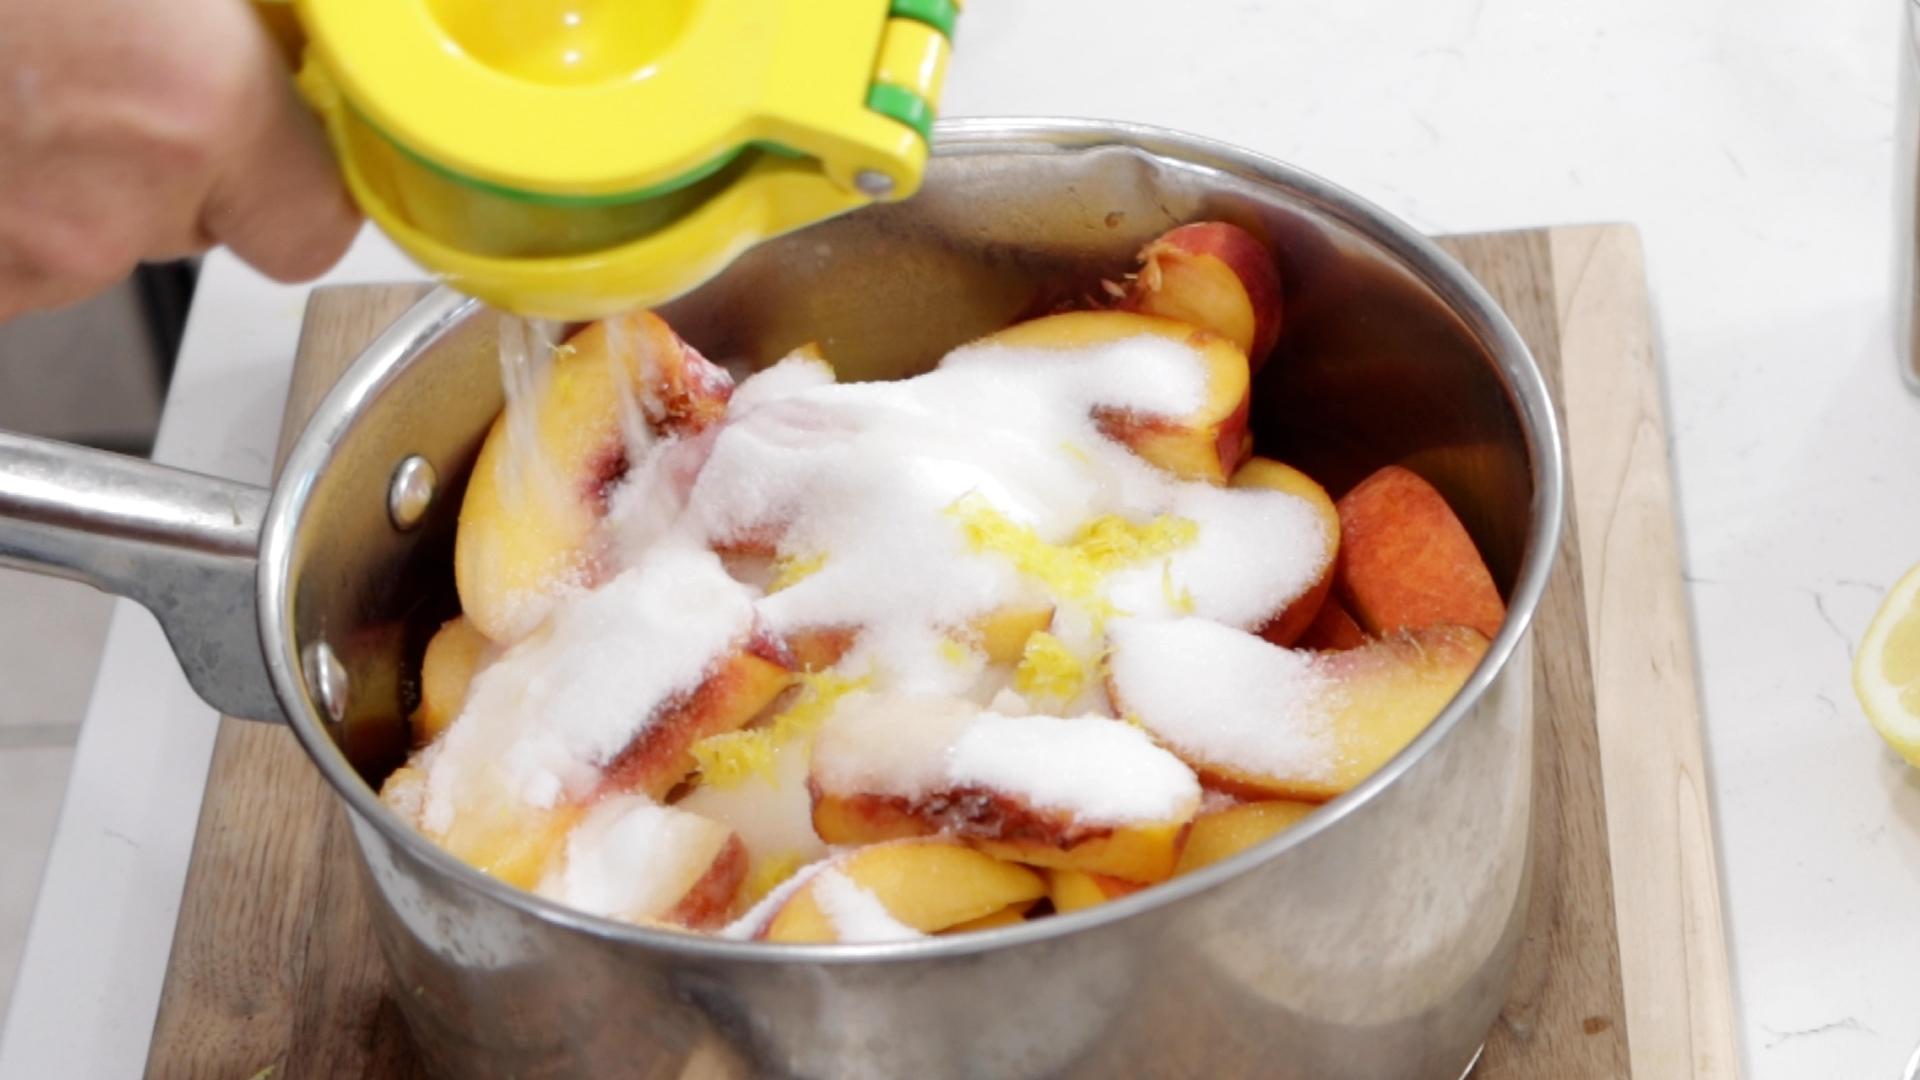 How to Make Peach Cobbler From Scratch Homemade Peach Cobbler Recipe.00_02_09_12.Still004.jpg